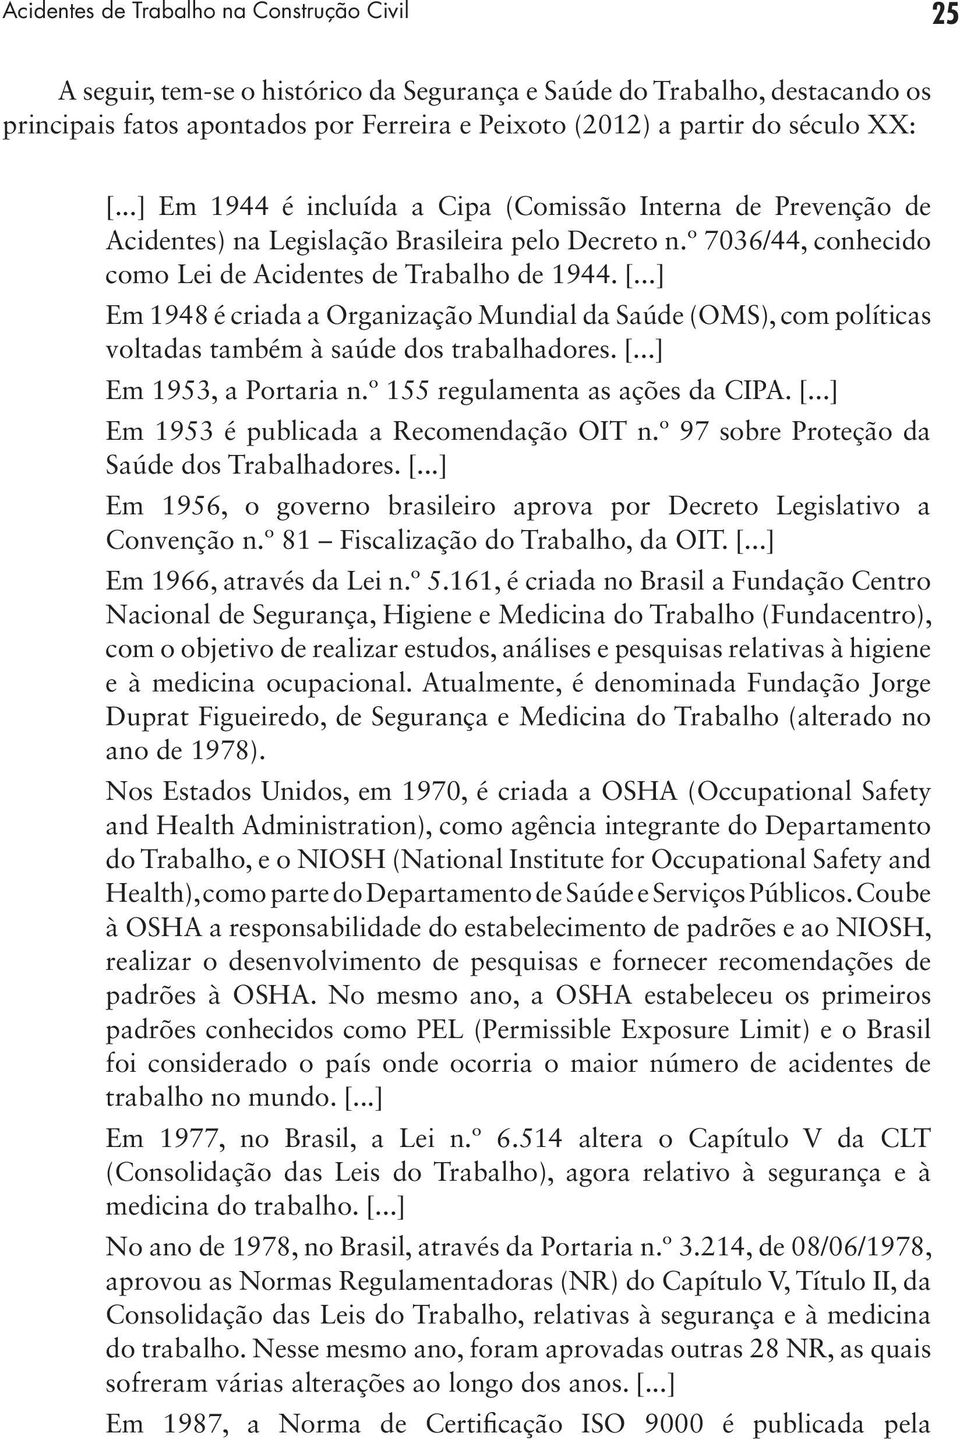 [...] Em 1953, a Portaria n.º 155 regulamenta as ações da CIPA. [...] Em 1953 é publicada a Recomendação OIT n.º 97 sobre Proteção da Saúde dos Trabalhadores. [...] Em 1956, o governo brasileiro aprova por Decreto Legislativo a Convenção n.